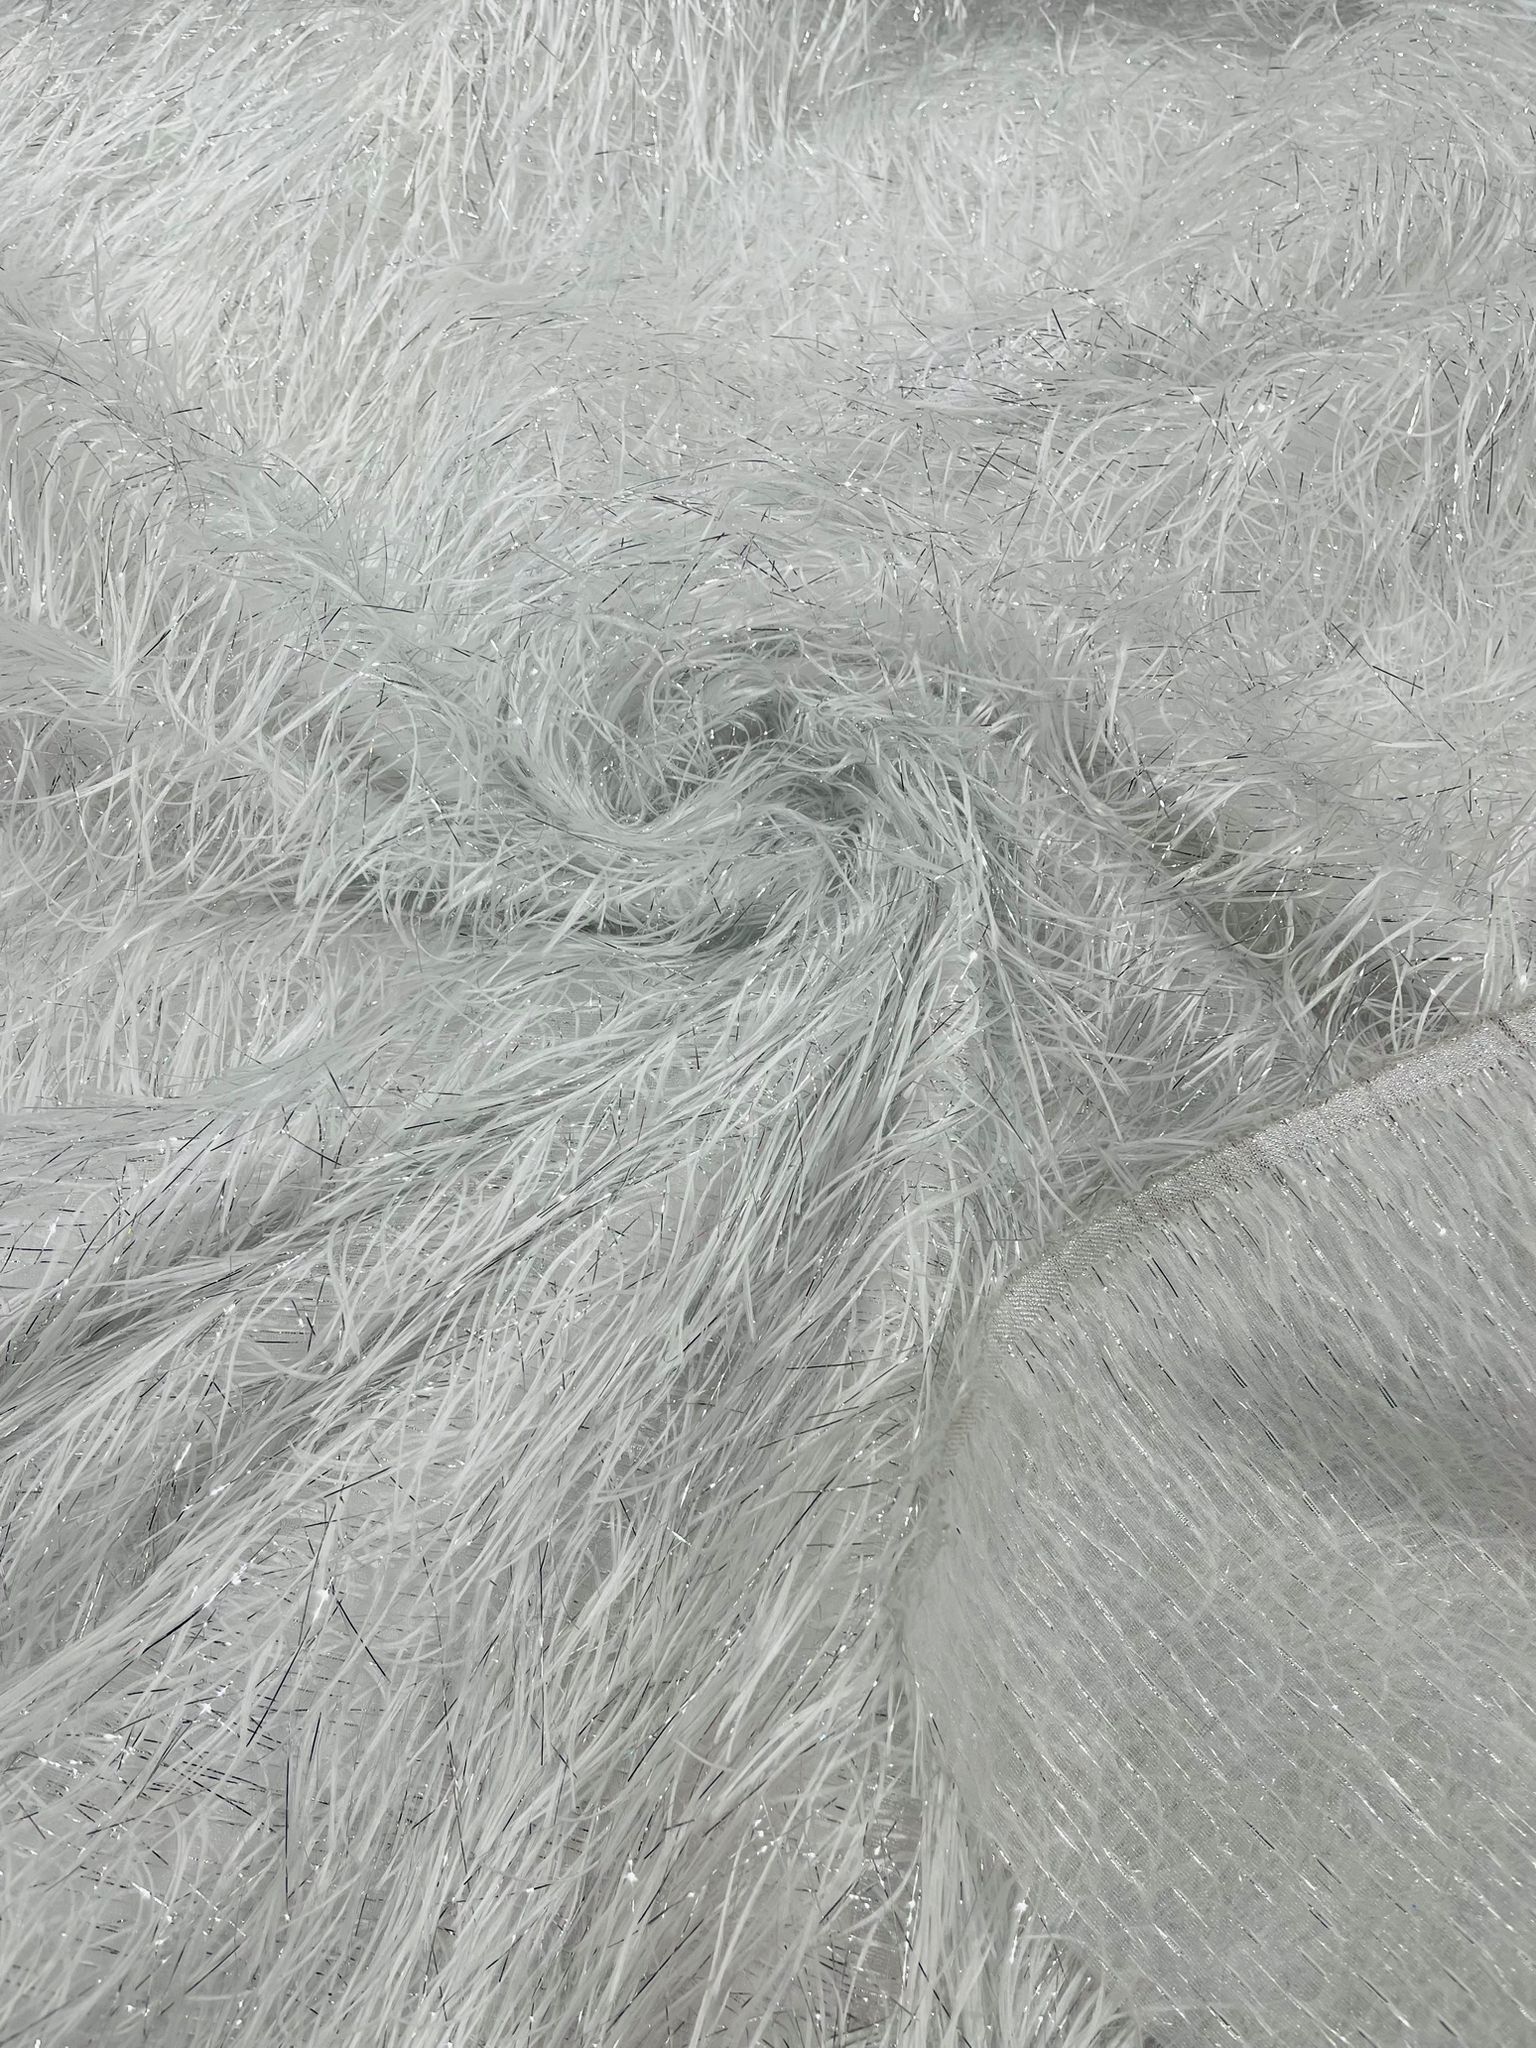 Eyelash Fringe Metallic Fabric - White/Silver - Hanging Fringe Metallic Decorative Crafts Dress Fabric By Yard